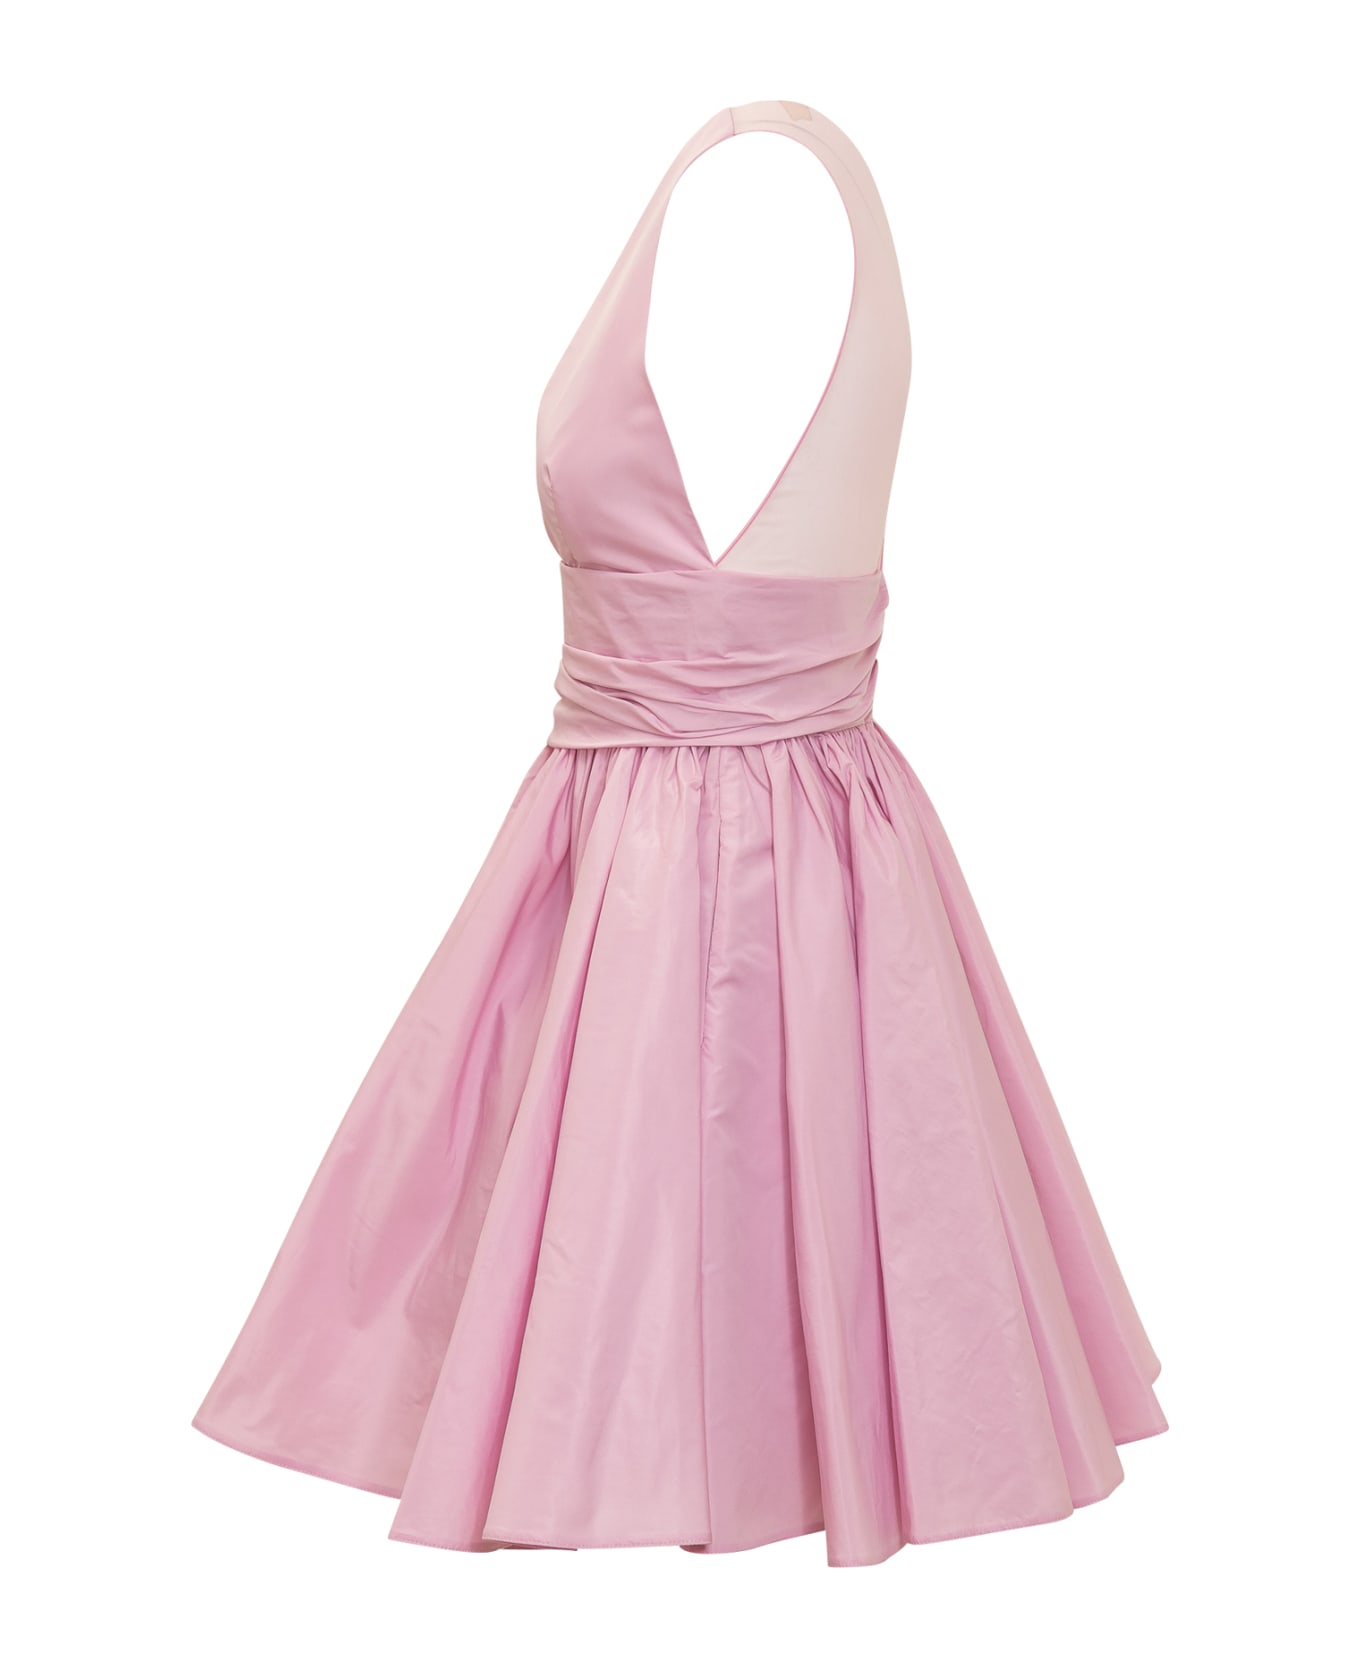 Pinko Casalfermo Dress - PINK